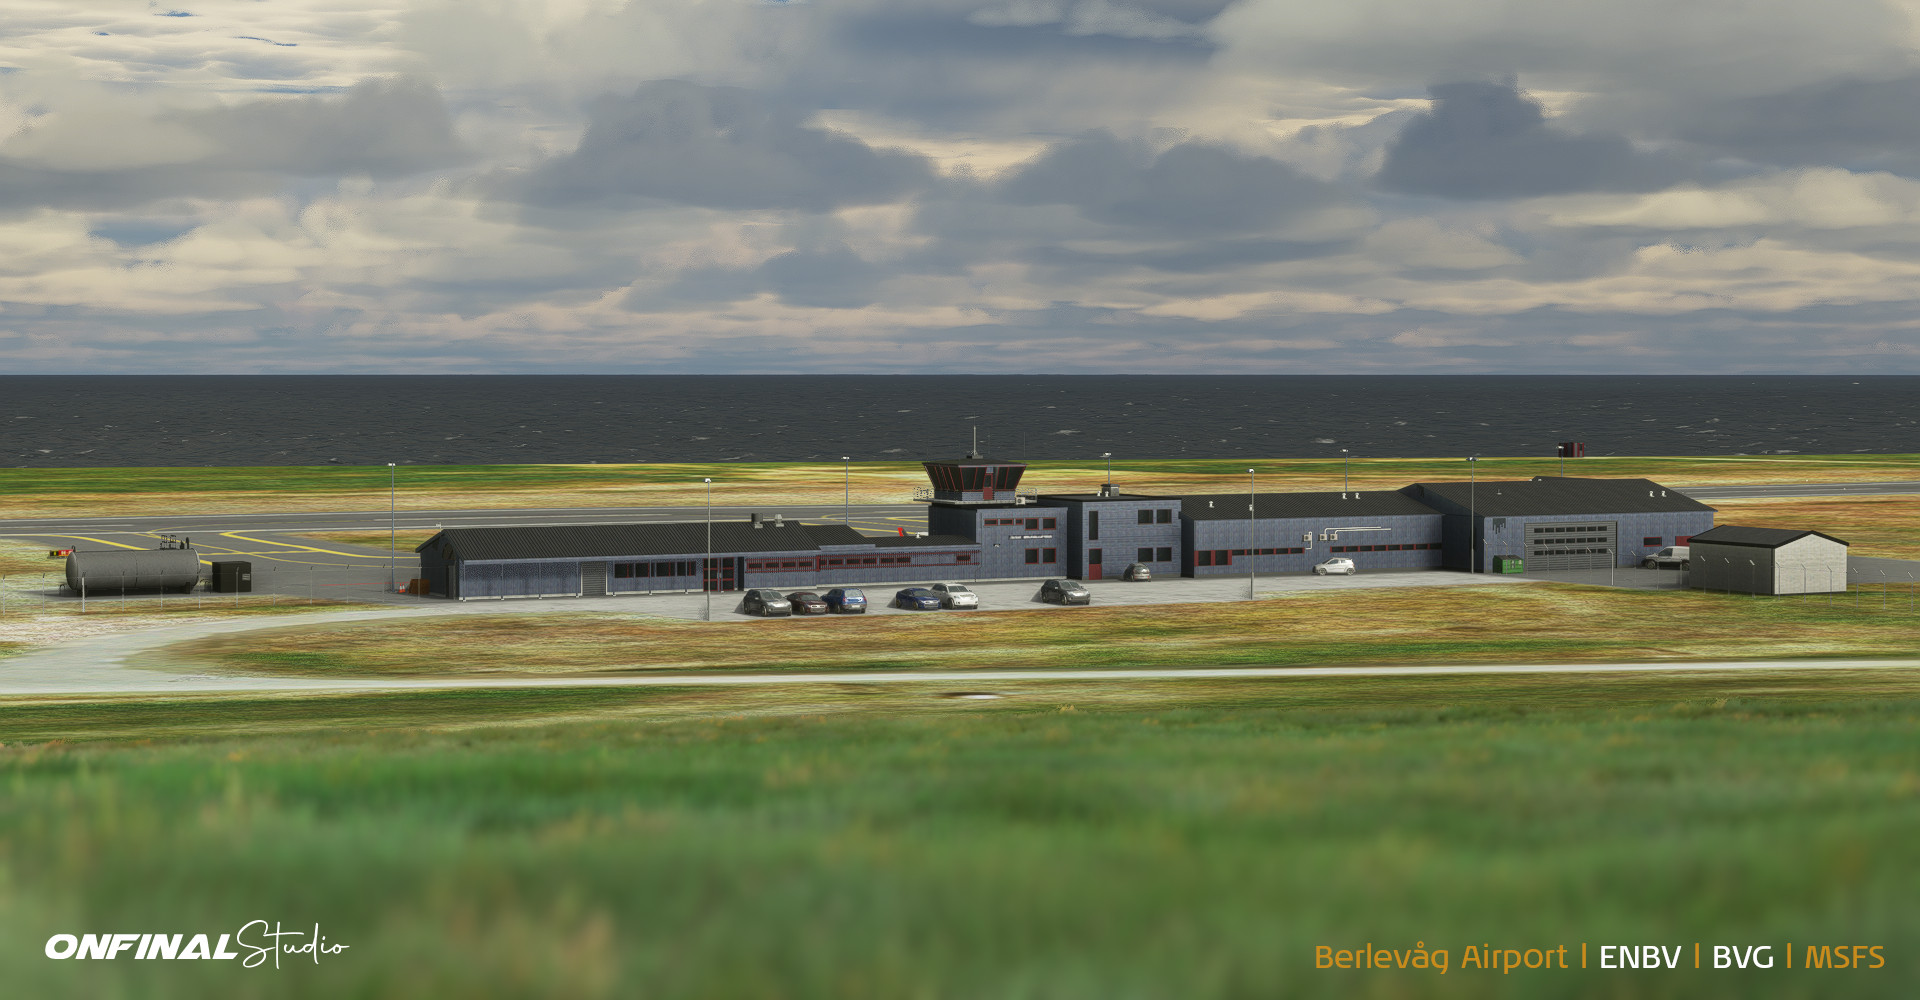 Berlevåg Berlevag Airport ENBV Scenery MSFS 2020 P3D Prepar3d